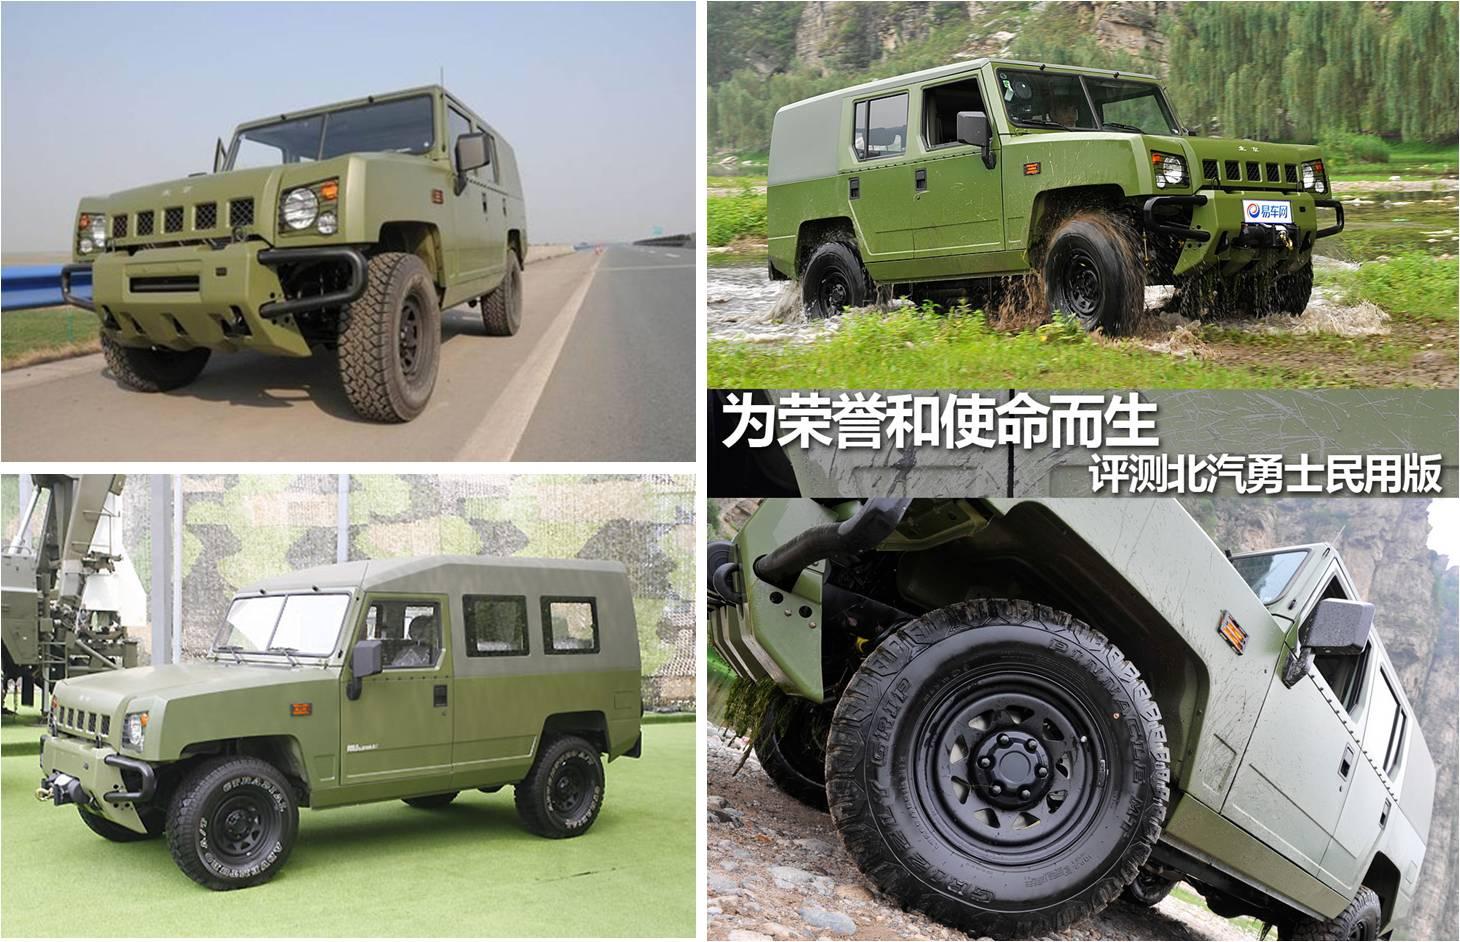 怎么评价中国的「勇士」军用车的外观设计?和国外同类产品相比呢?